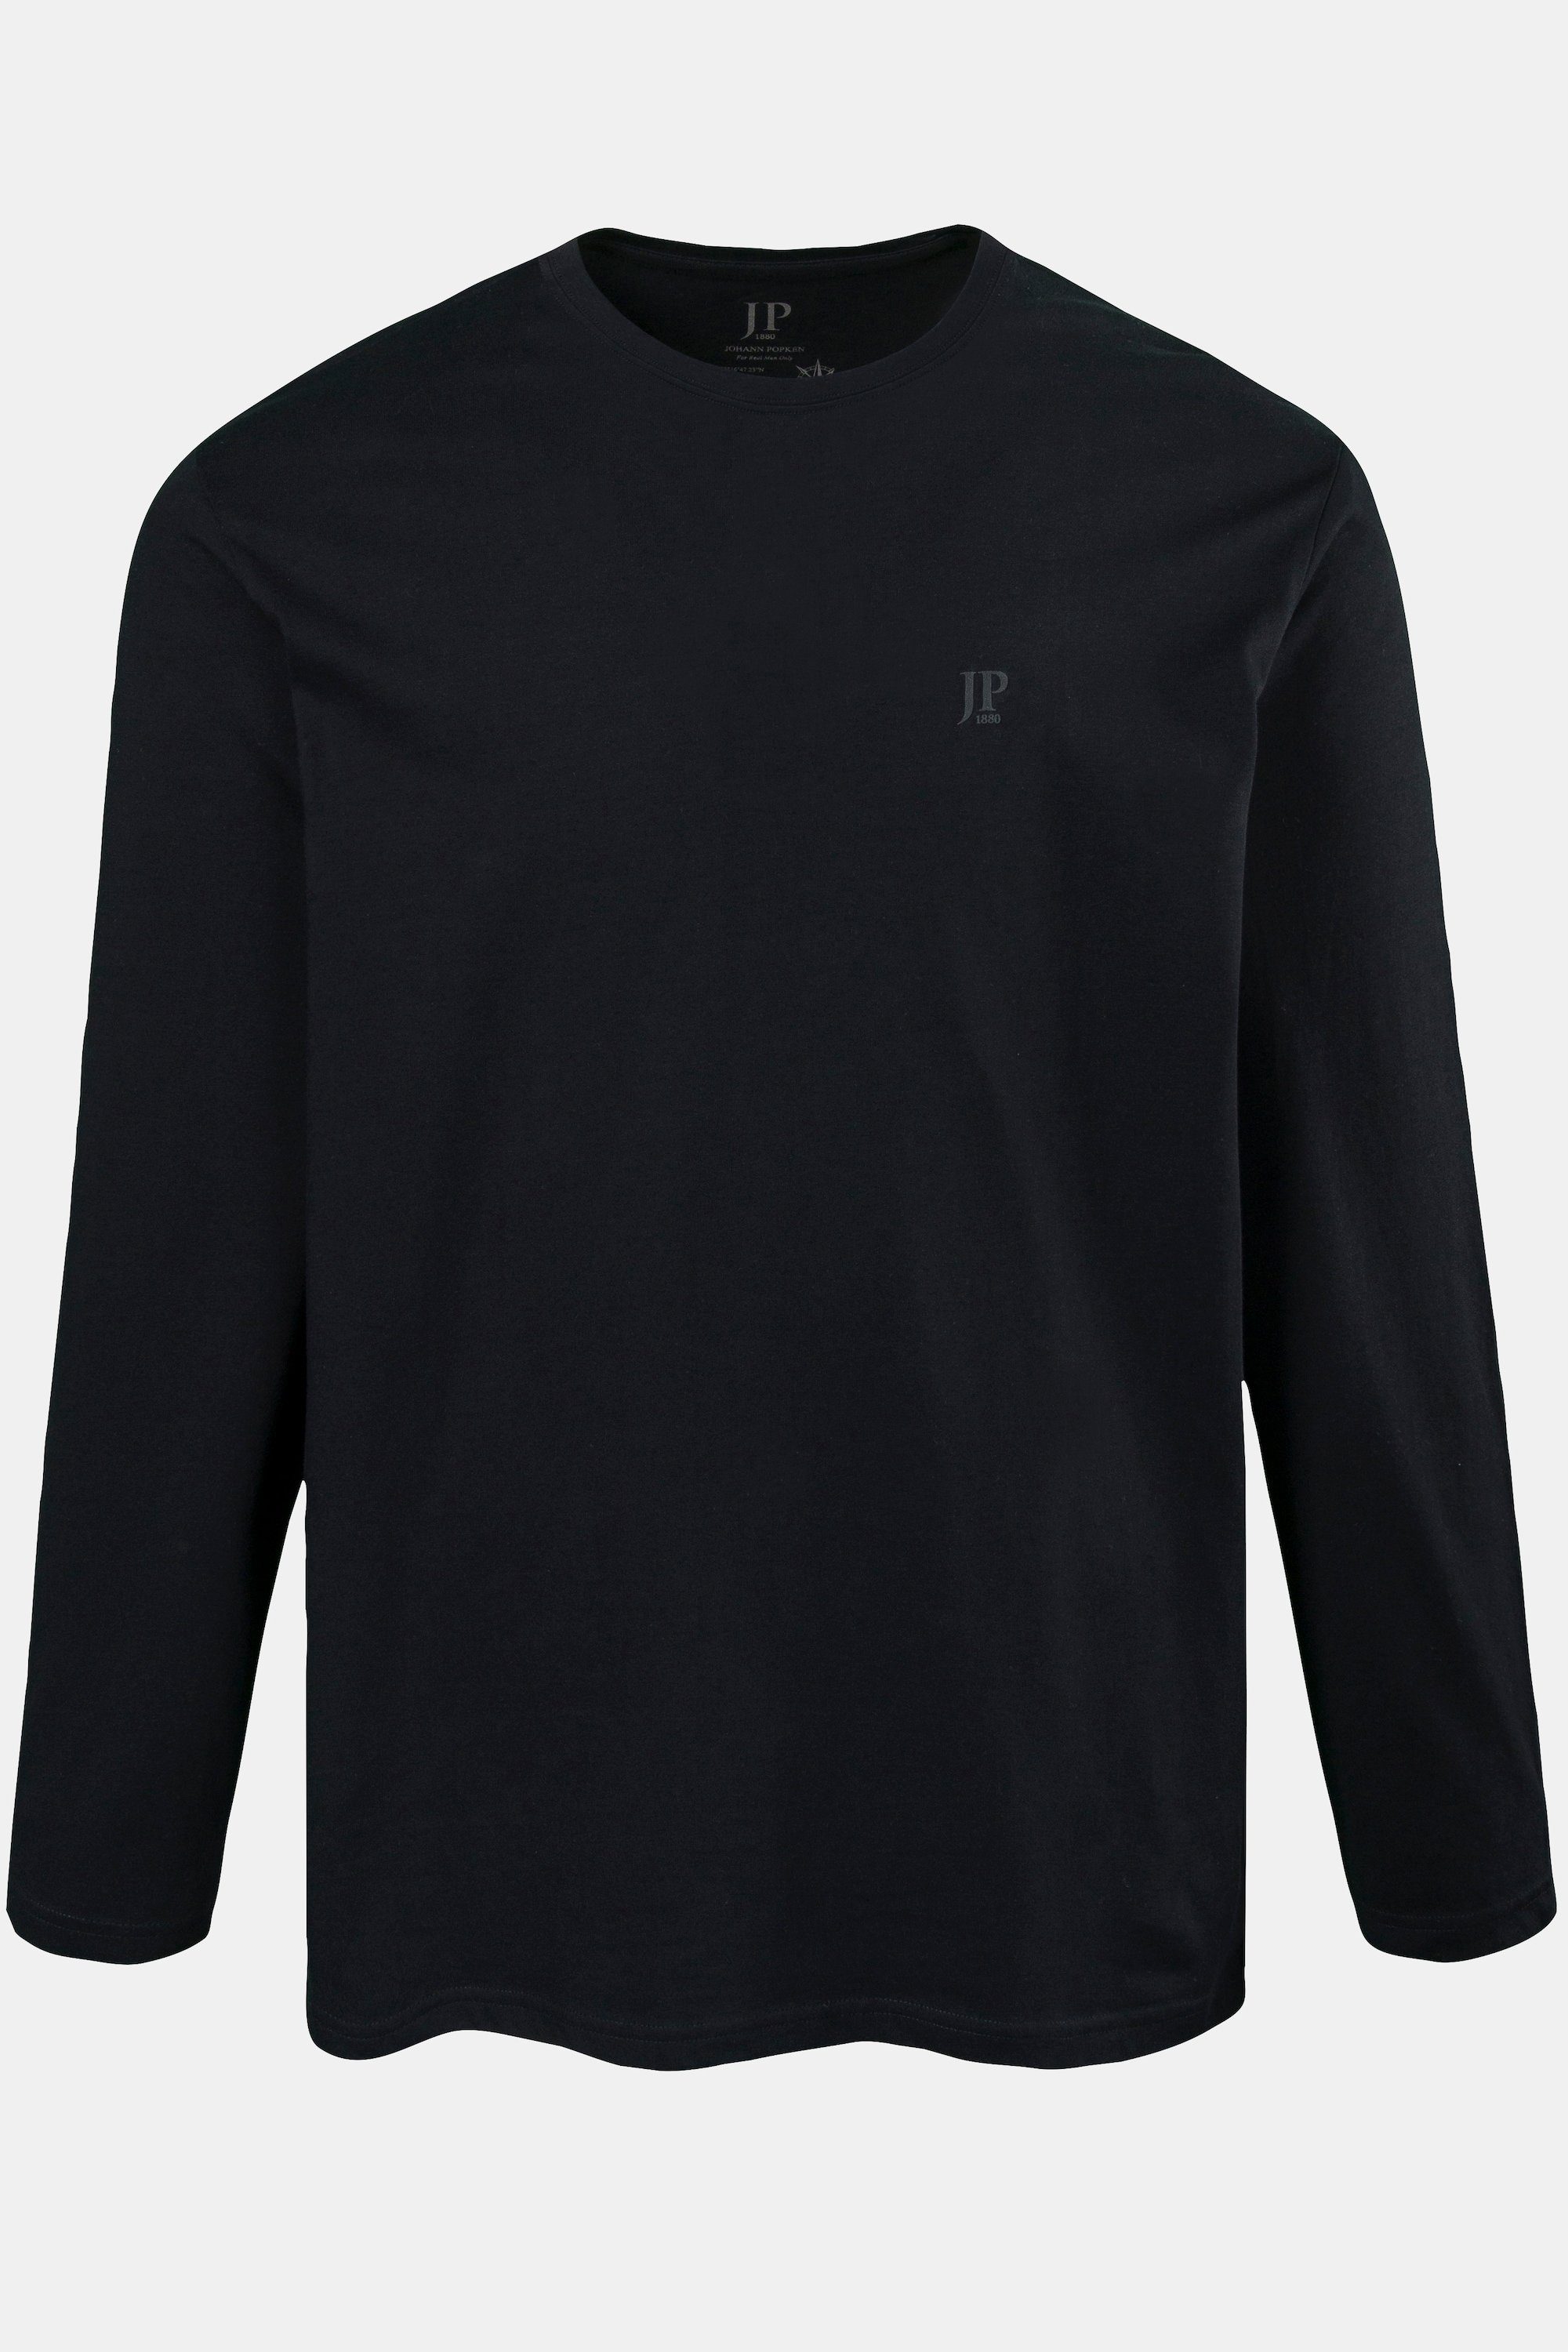 JP1880 T-Shirt Langarmshirt schwarz Basic 8XL bis